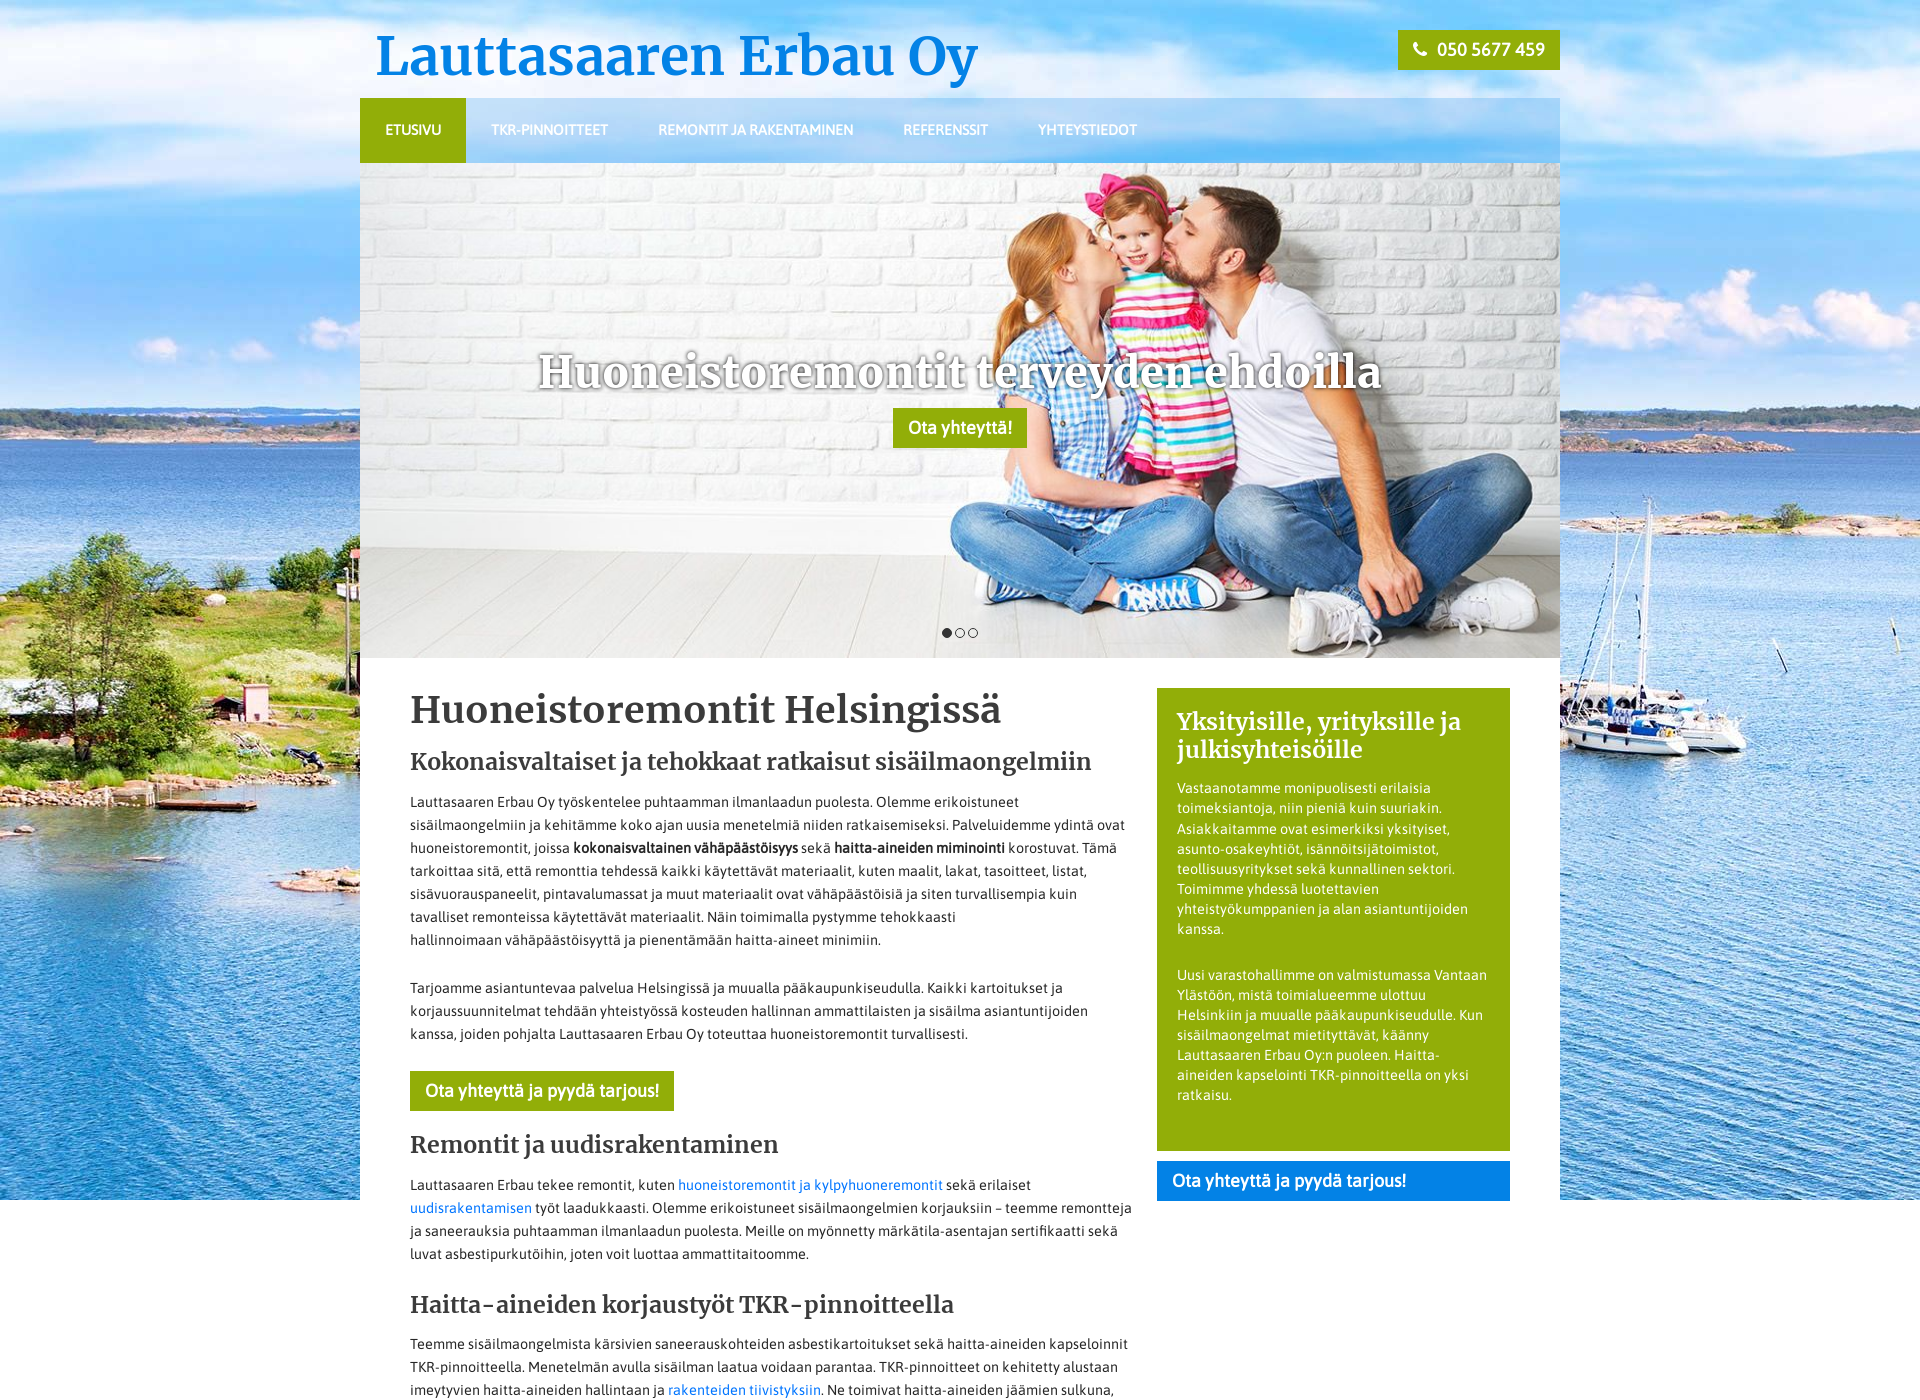 Näyttökuva lauttasaarenerbau.fi